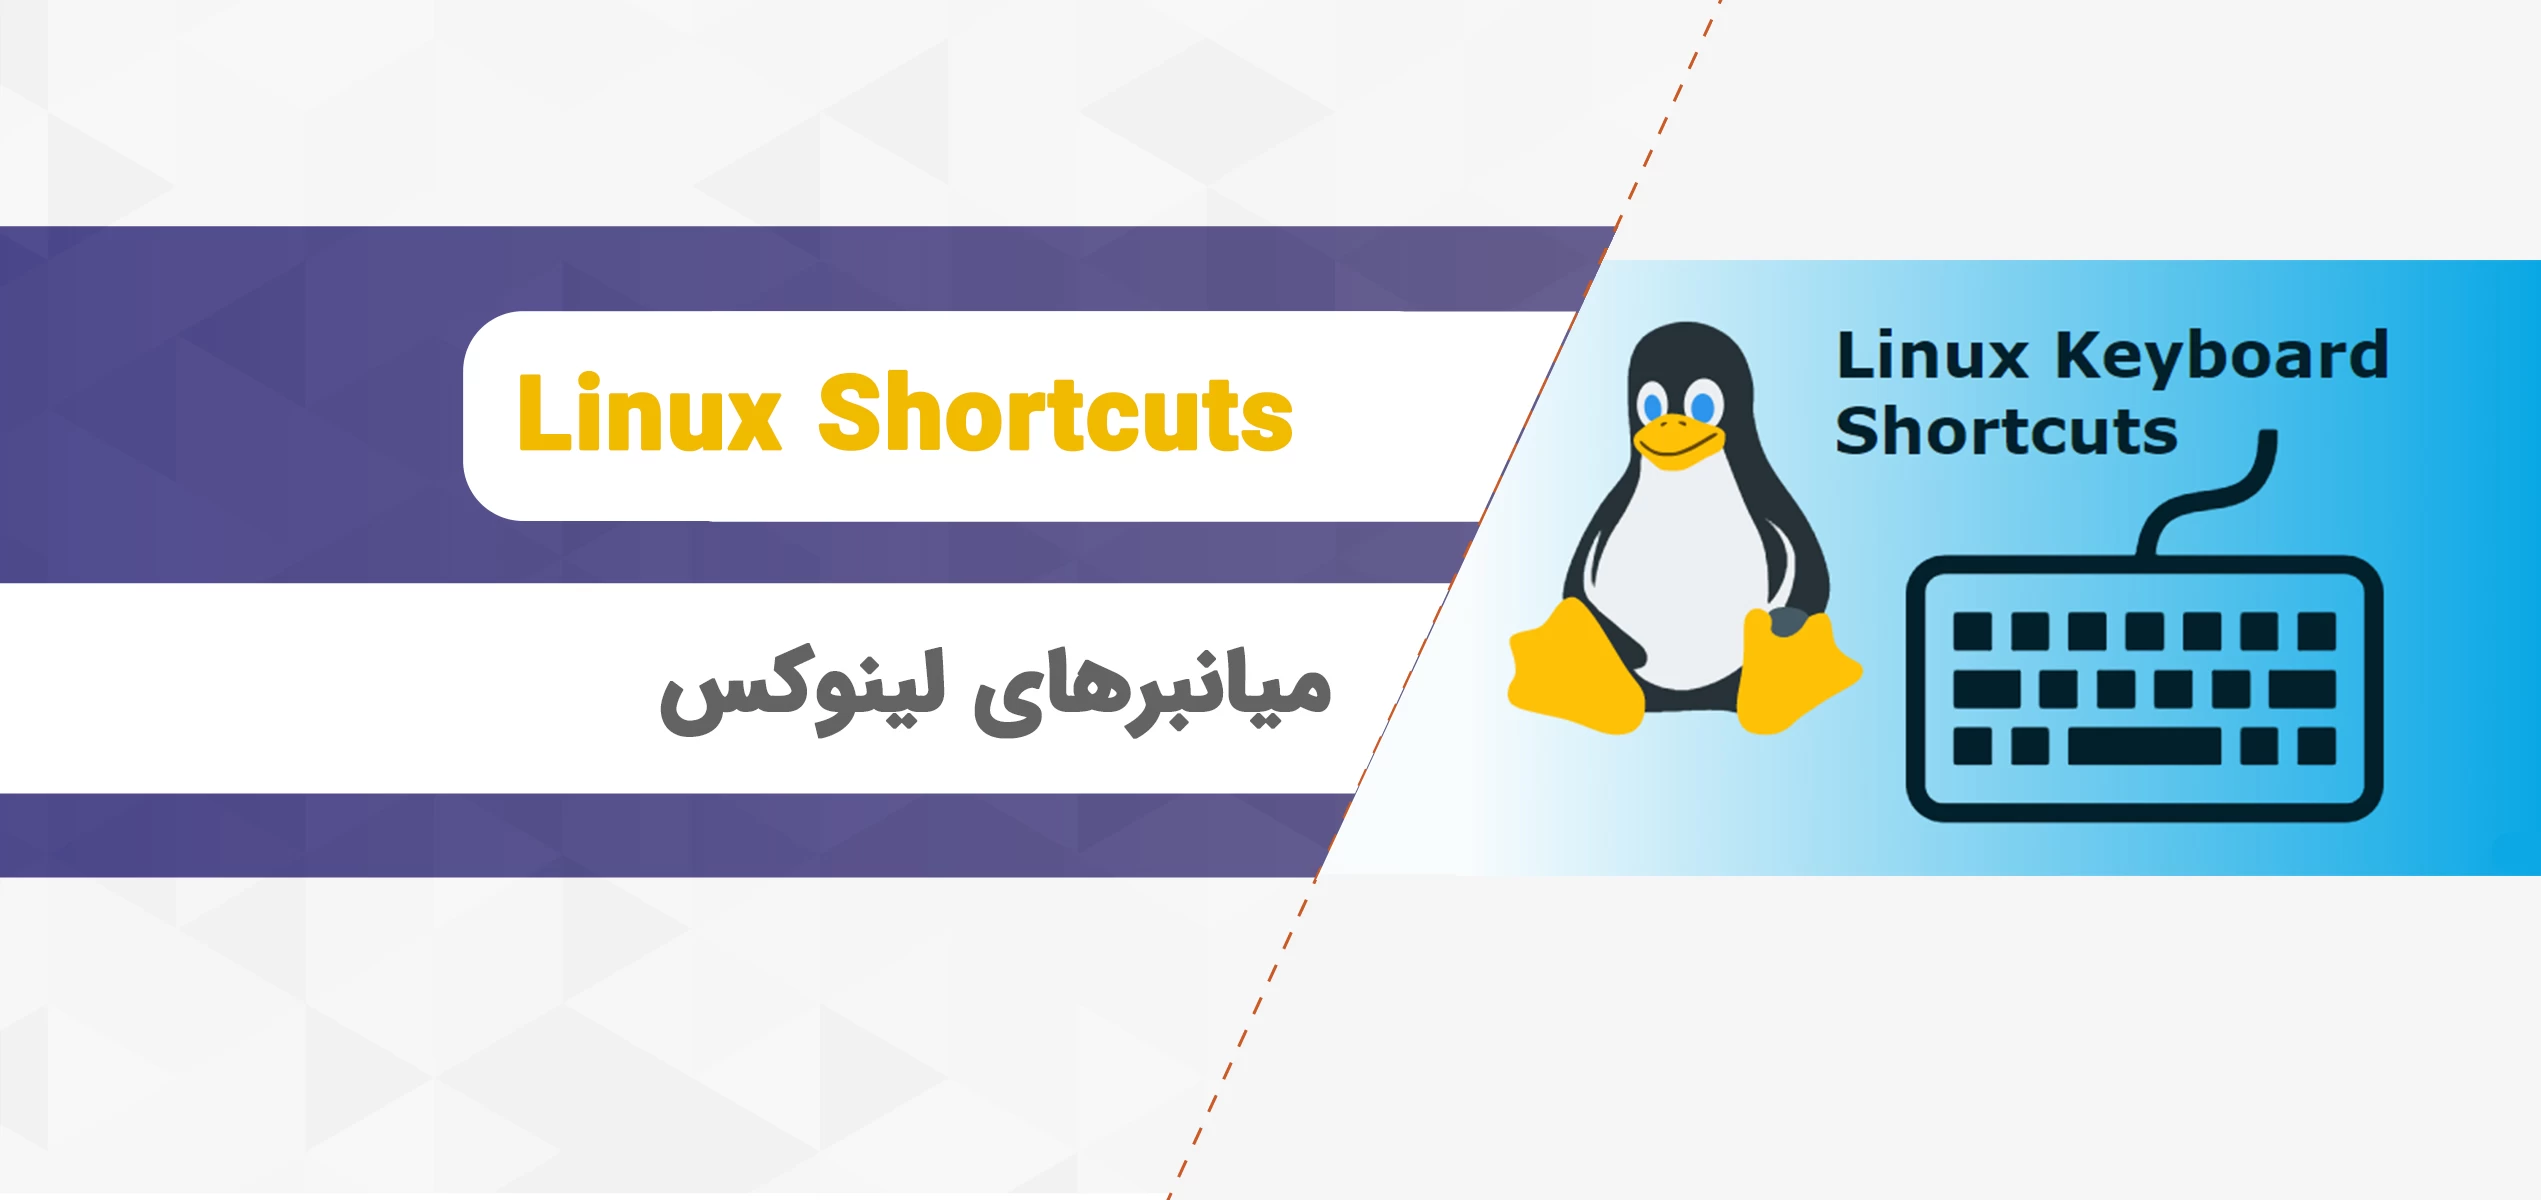 میانبرهای لینوکس، راهنمای shortcutهای سیستم عامل لینوکس